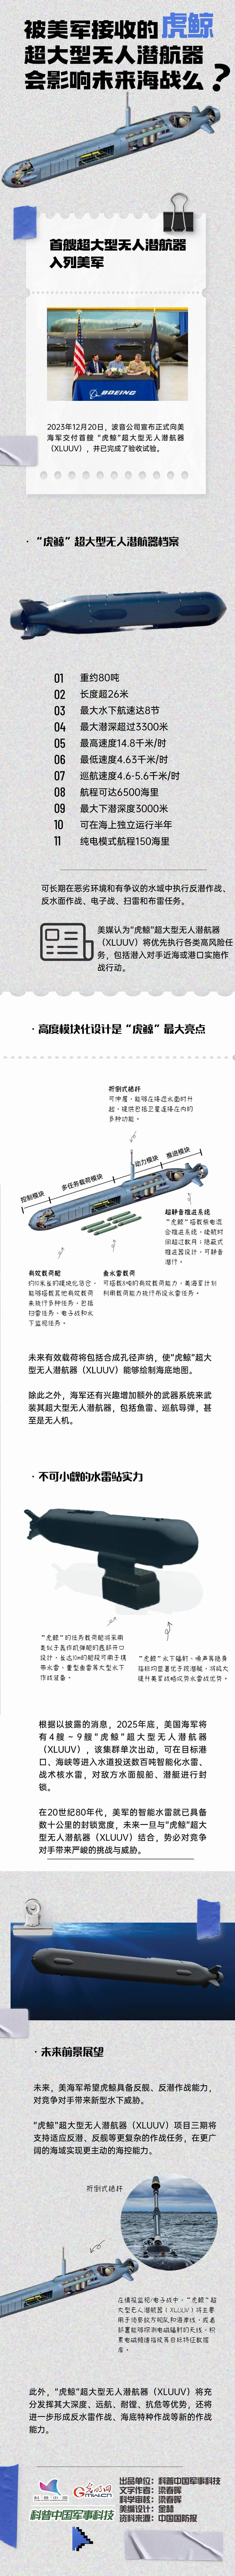 【科普中国军事科技】被美军接收的虎鲸超大型无人潜航器会影响未来海战么？